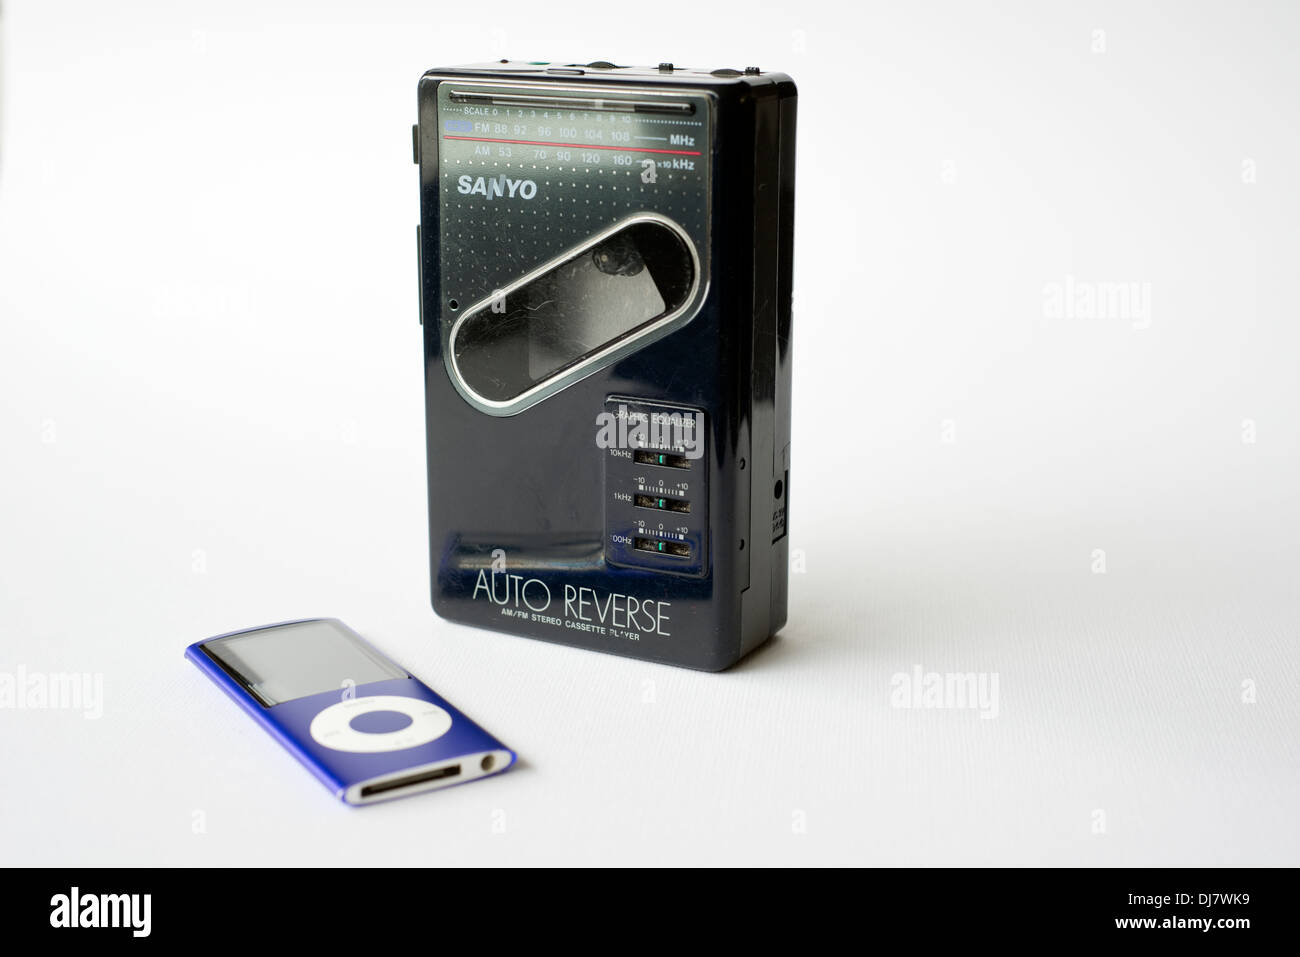 Un vieux walkman cassette player Sanyo personnels y compris la radio, aux côtés d'un Apple iPod Nano moderne Banque D'Images